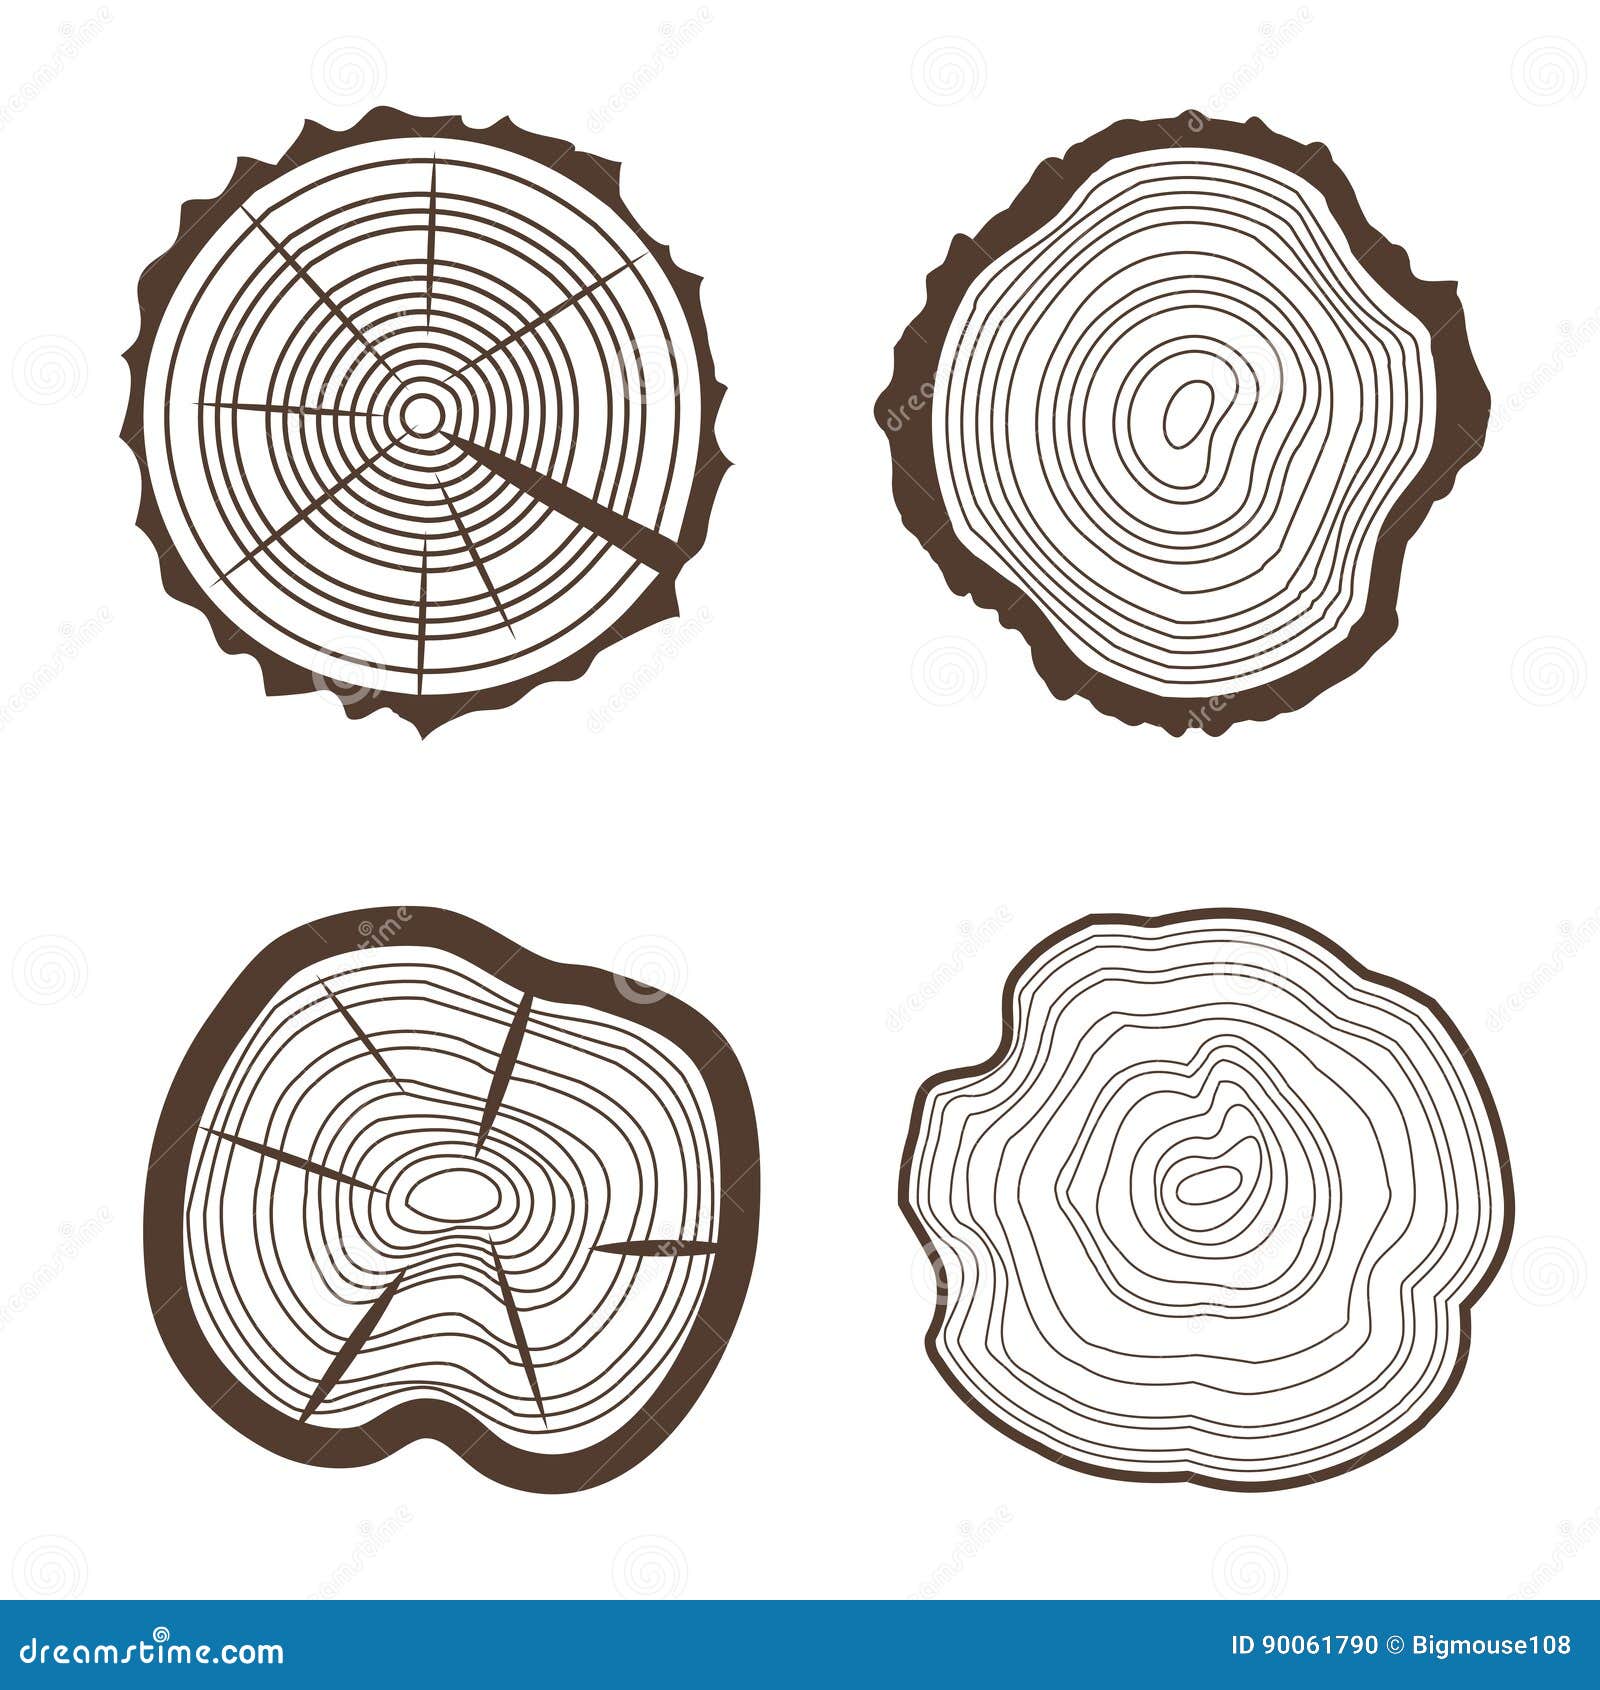 Die Eingestellten Baum Ringe Sahen Stamm Eco Design Art Zu Schneiden Vektor Vektor Abbildung Illustration Von Baum Vektor